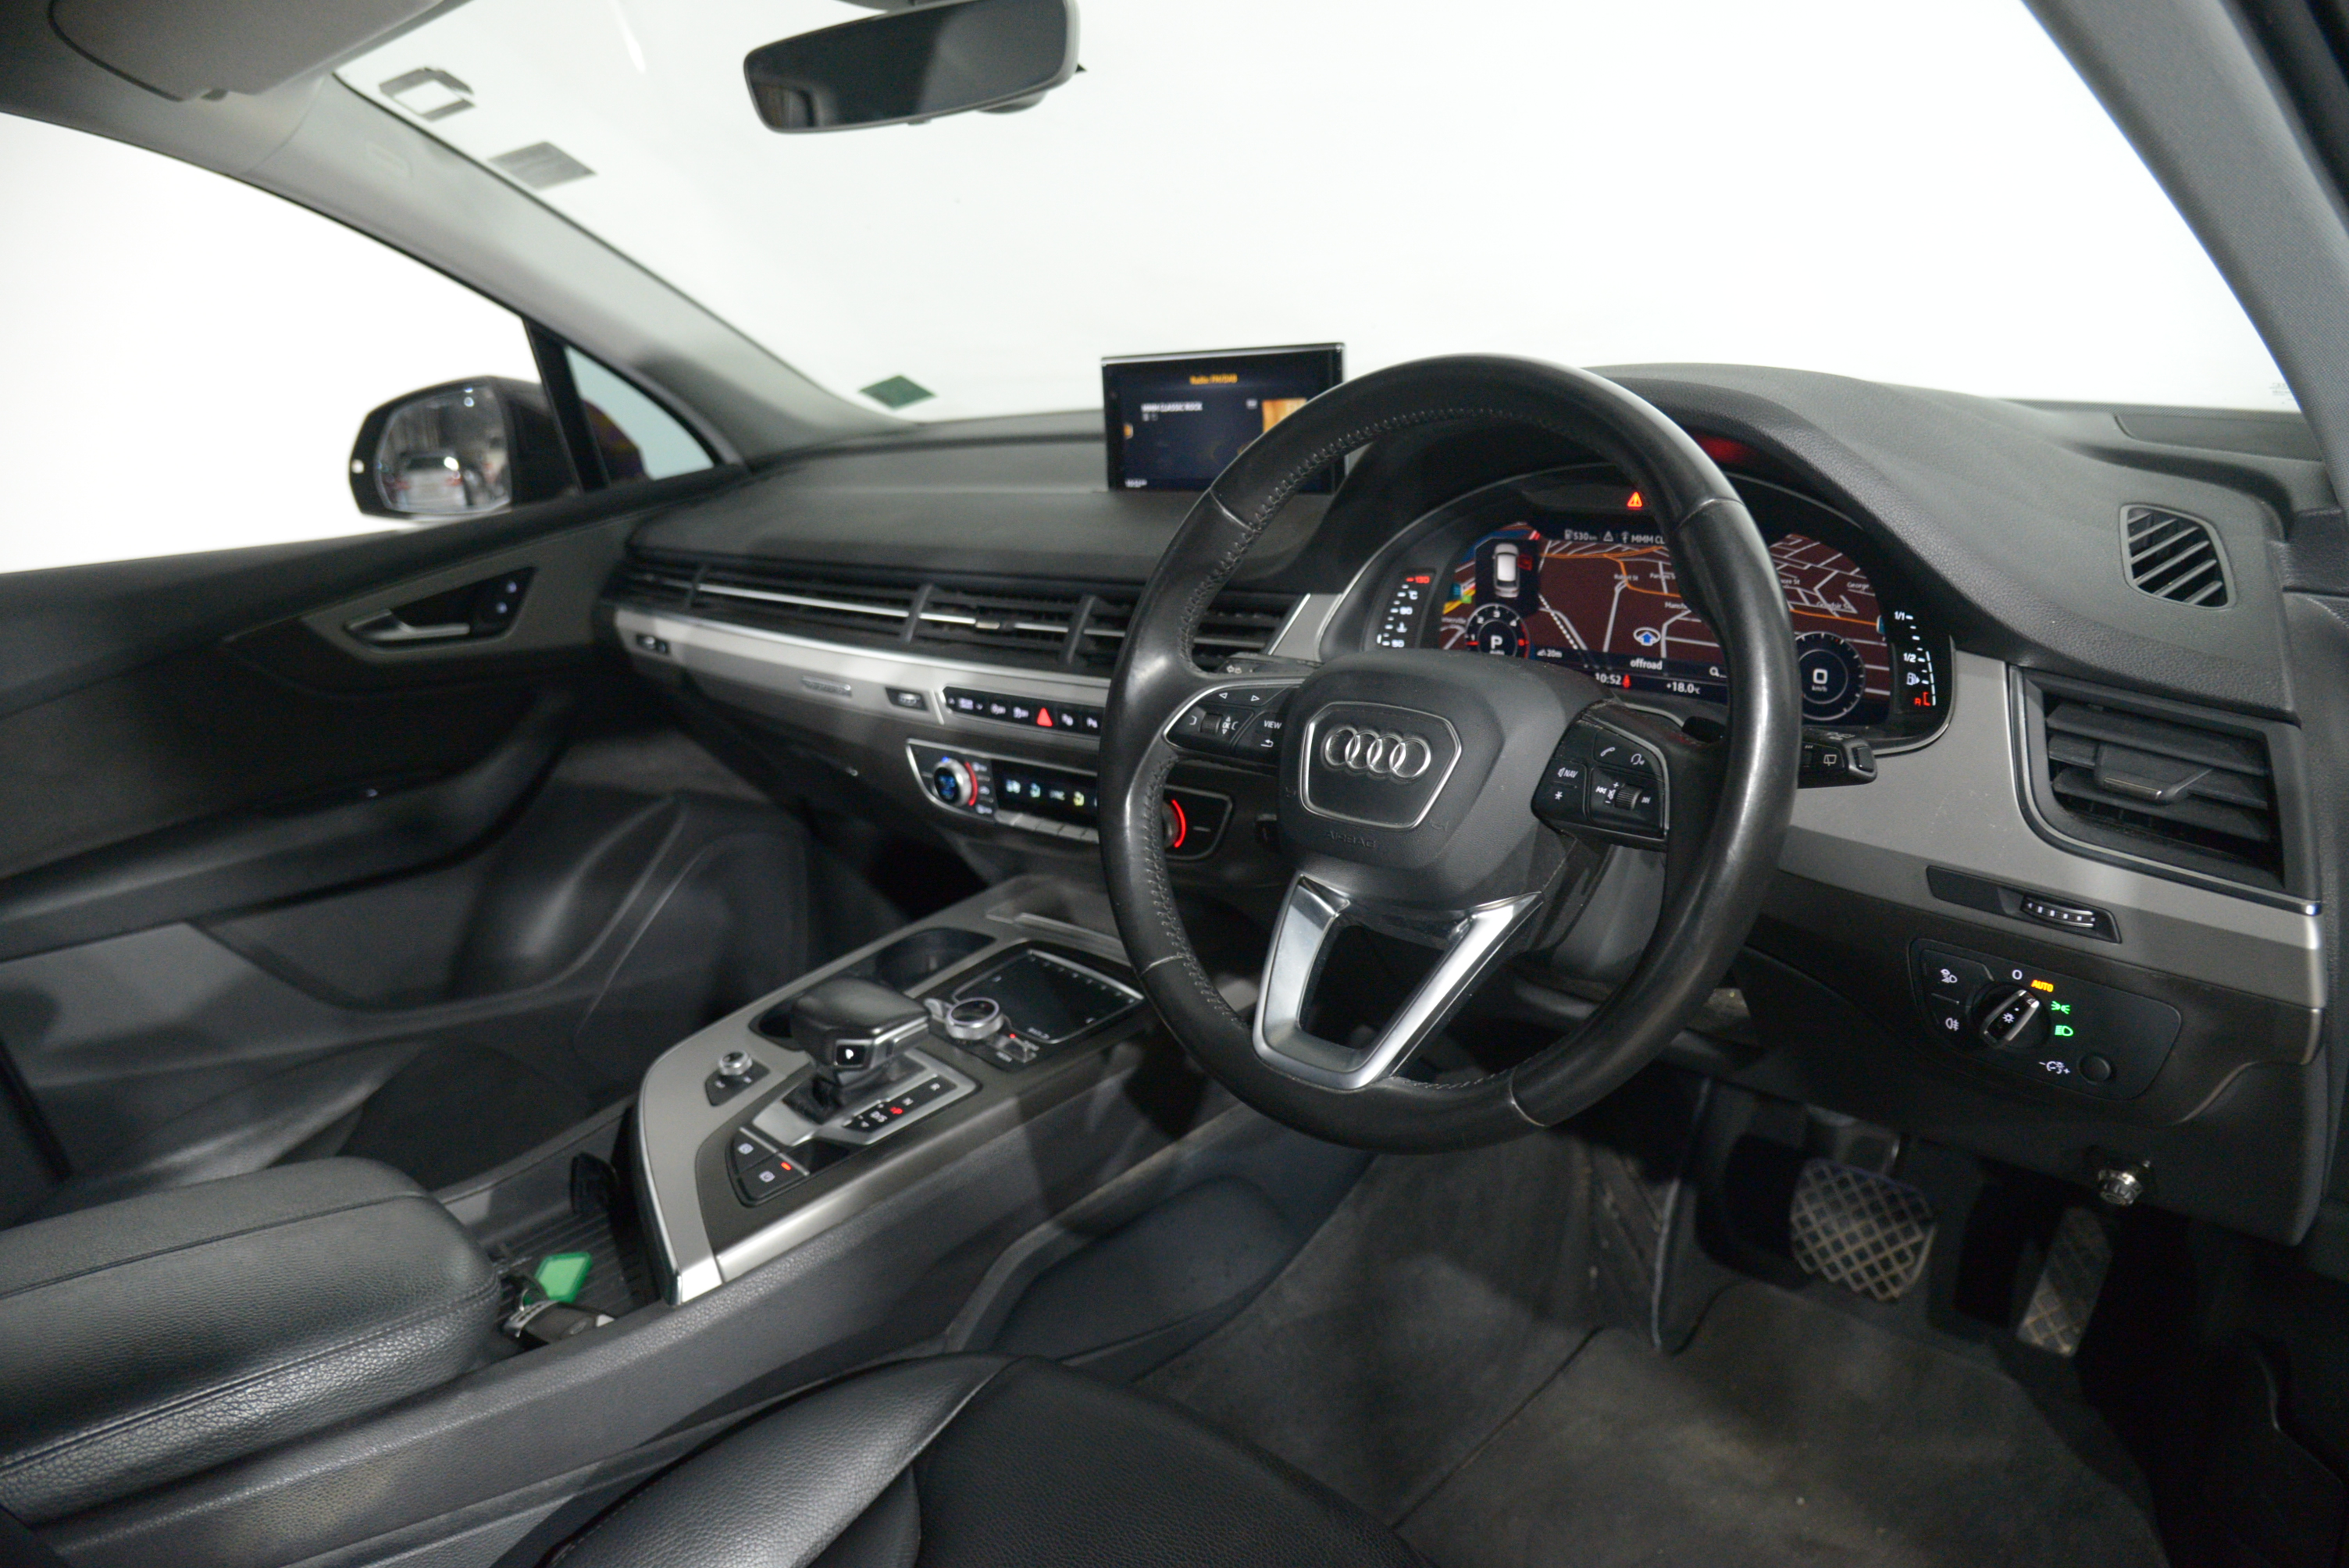 2015 Audi Q7 Audi Q7 3.0 Tdi Quattro Auto 3.0 Tdi Quattro SUV Image 11